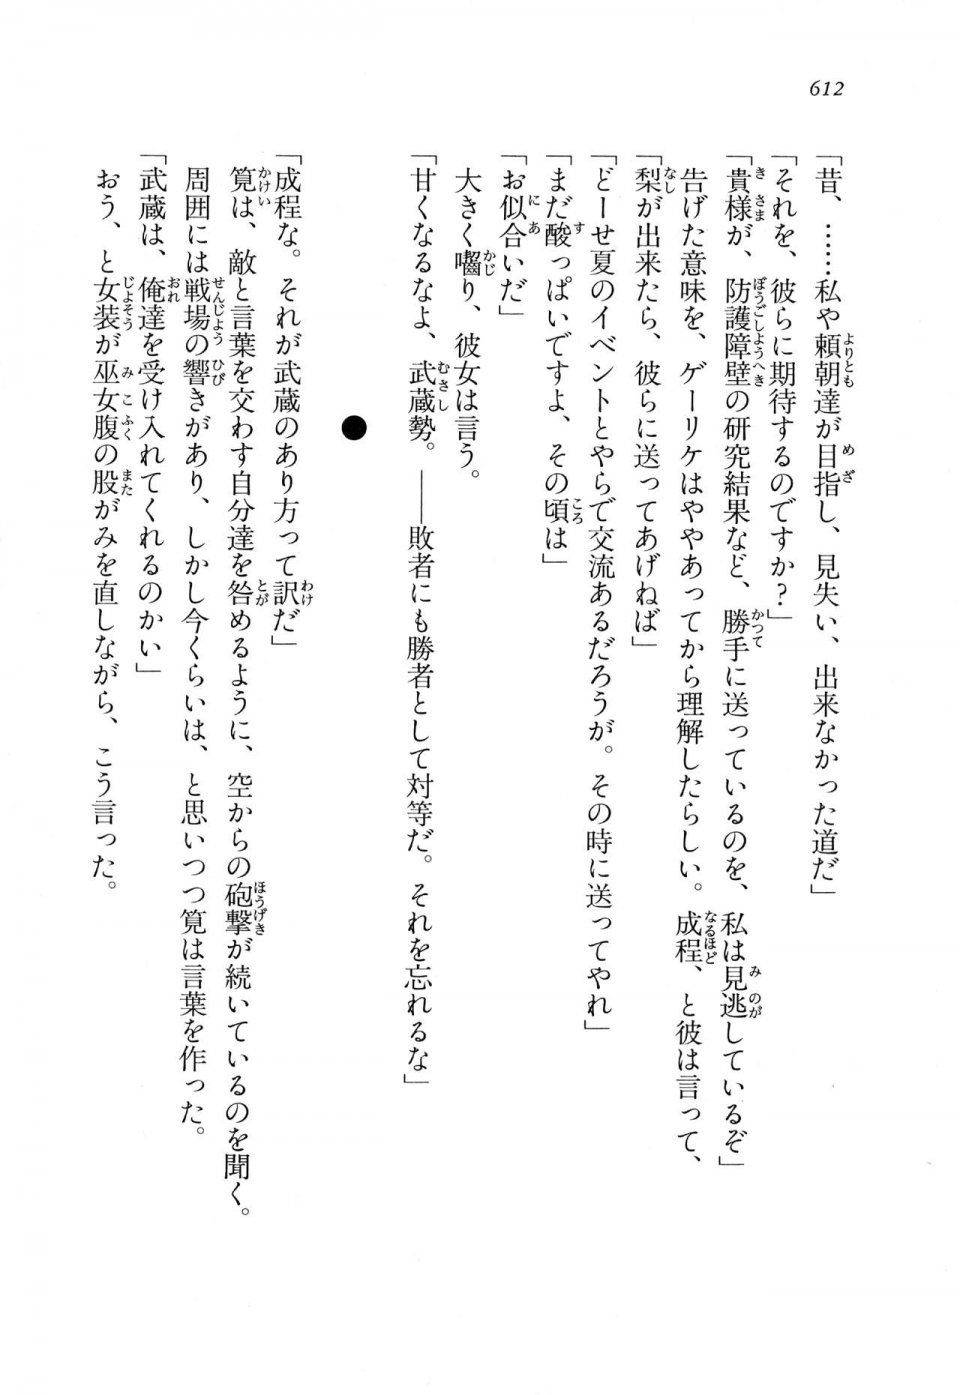 Kyoukai Senjou no Horizon LN Vol 11(5A) - Photo #612